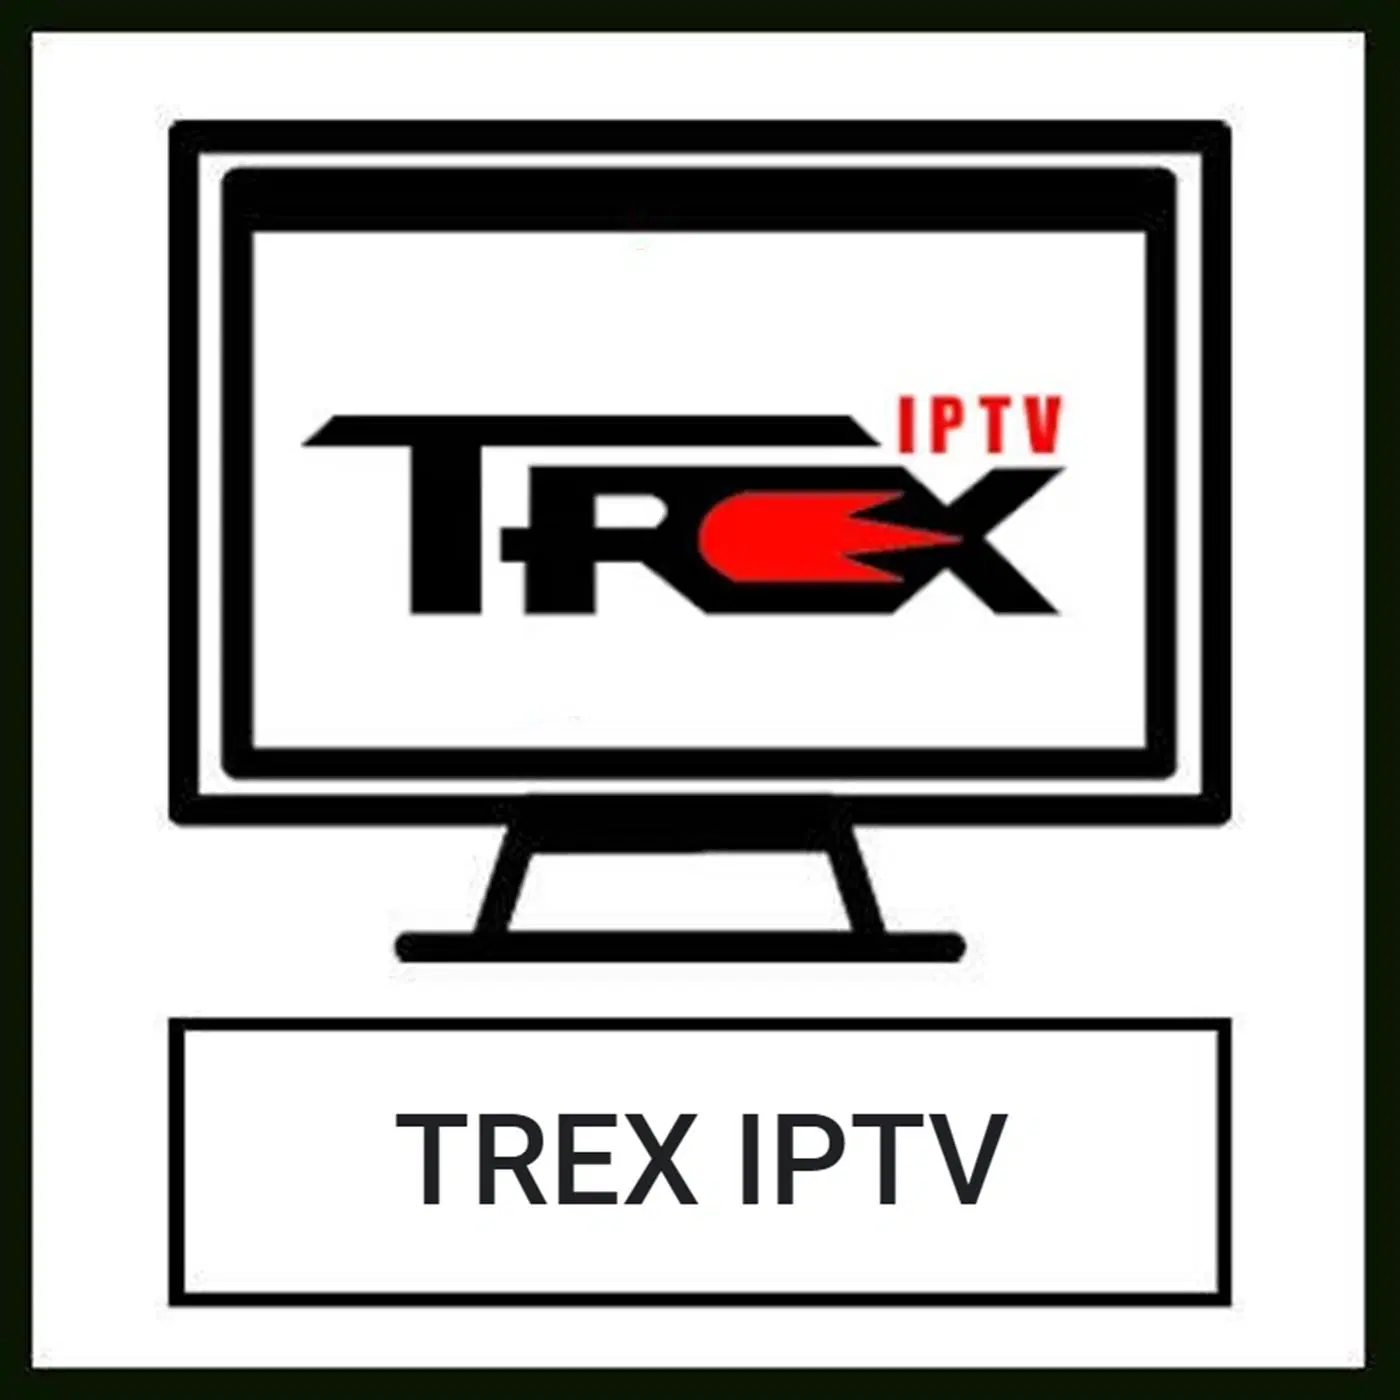 IPTV IPTV Globle Trex 4K VIP Premium Server 24 Horas código m3u Panel de revendedor de prueba gratuita créditos para el decodificador de TV inteligente